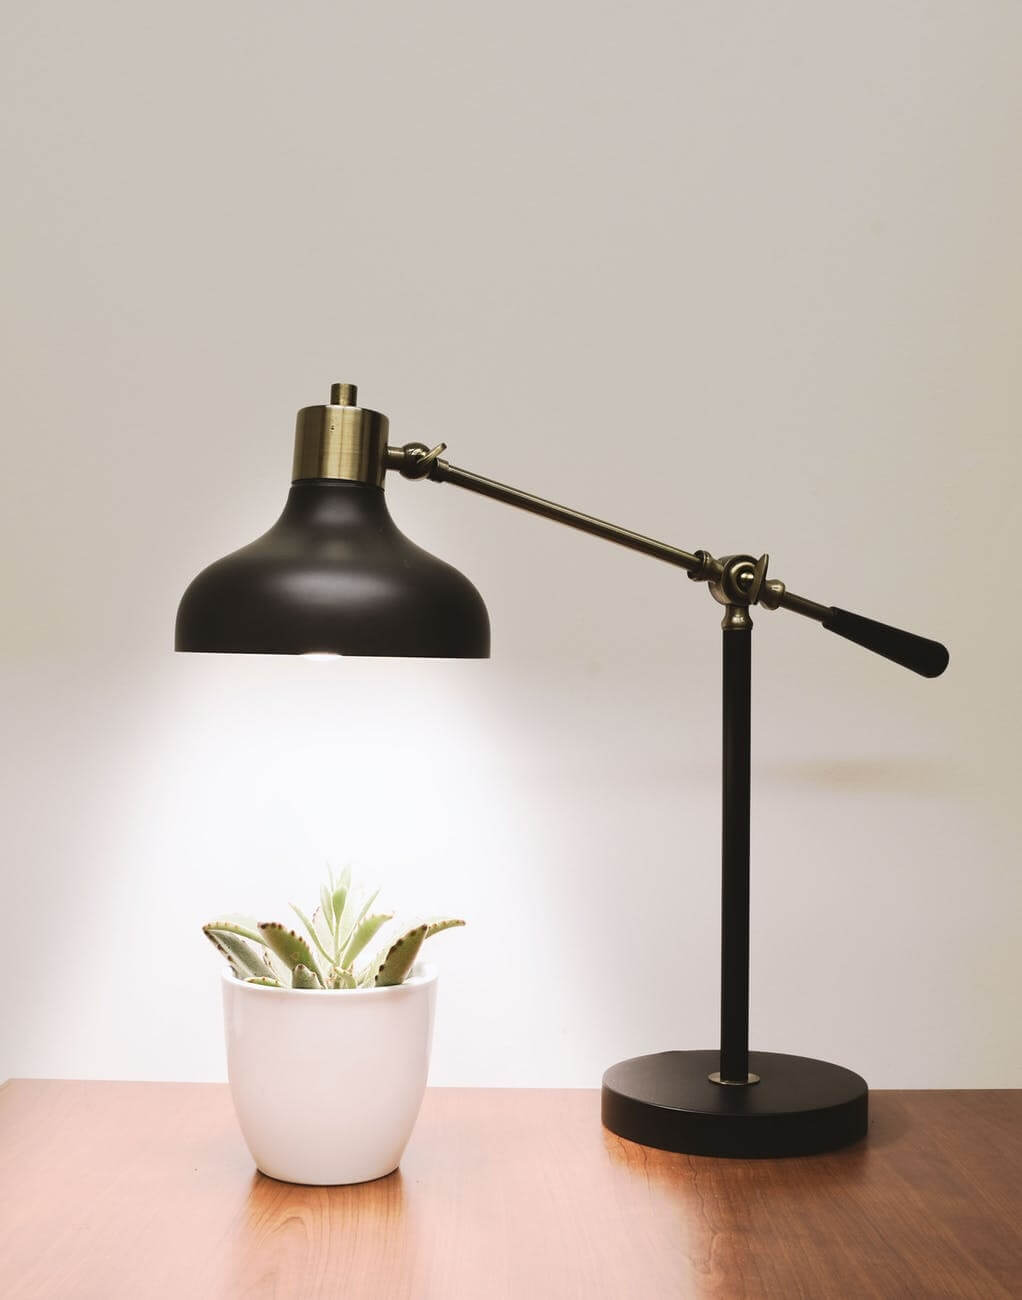 Tabletop desk lamp for lighting videos.